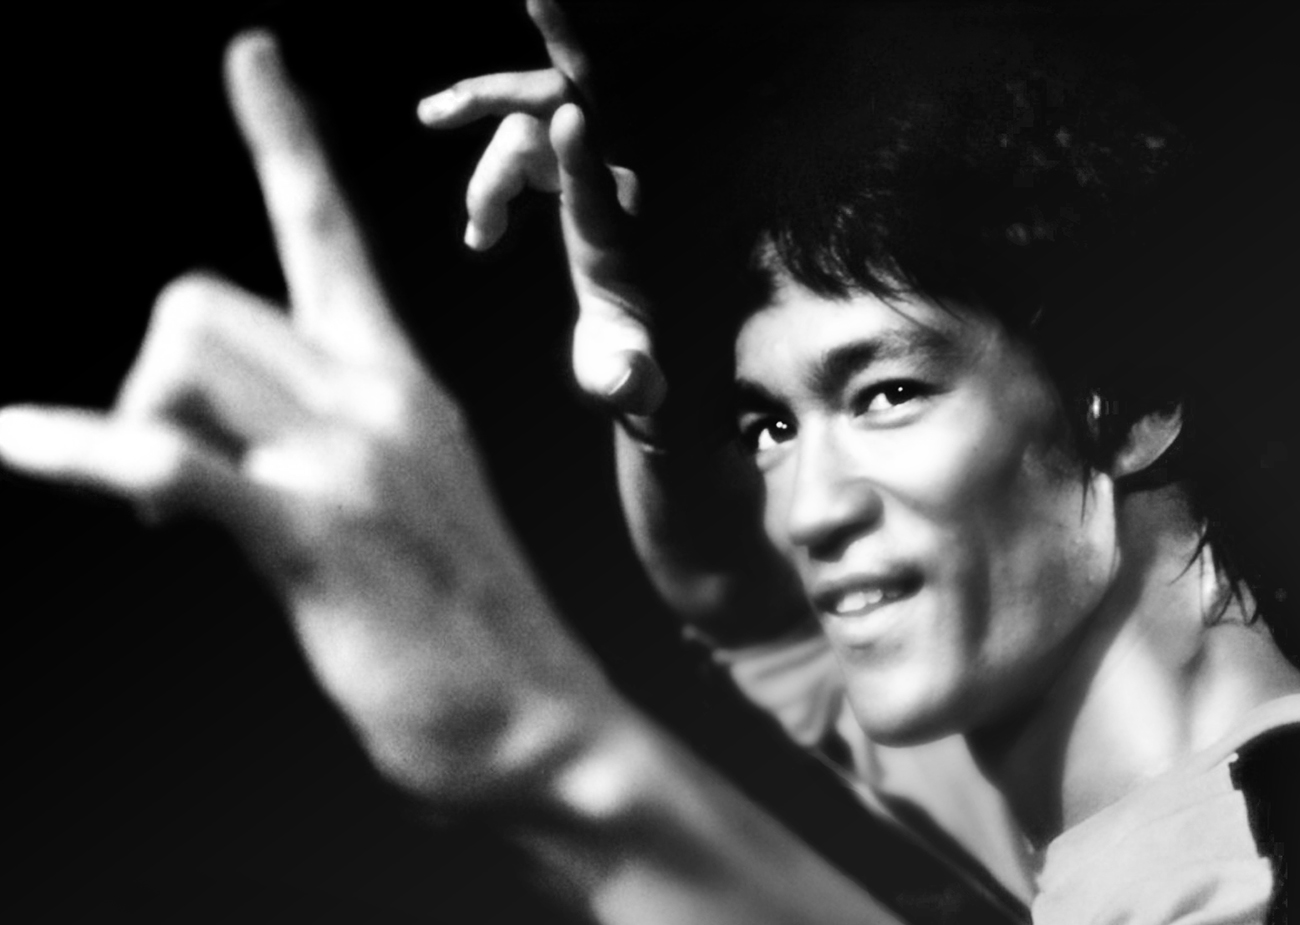 Bruce Lee.jpg